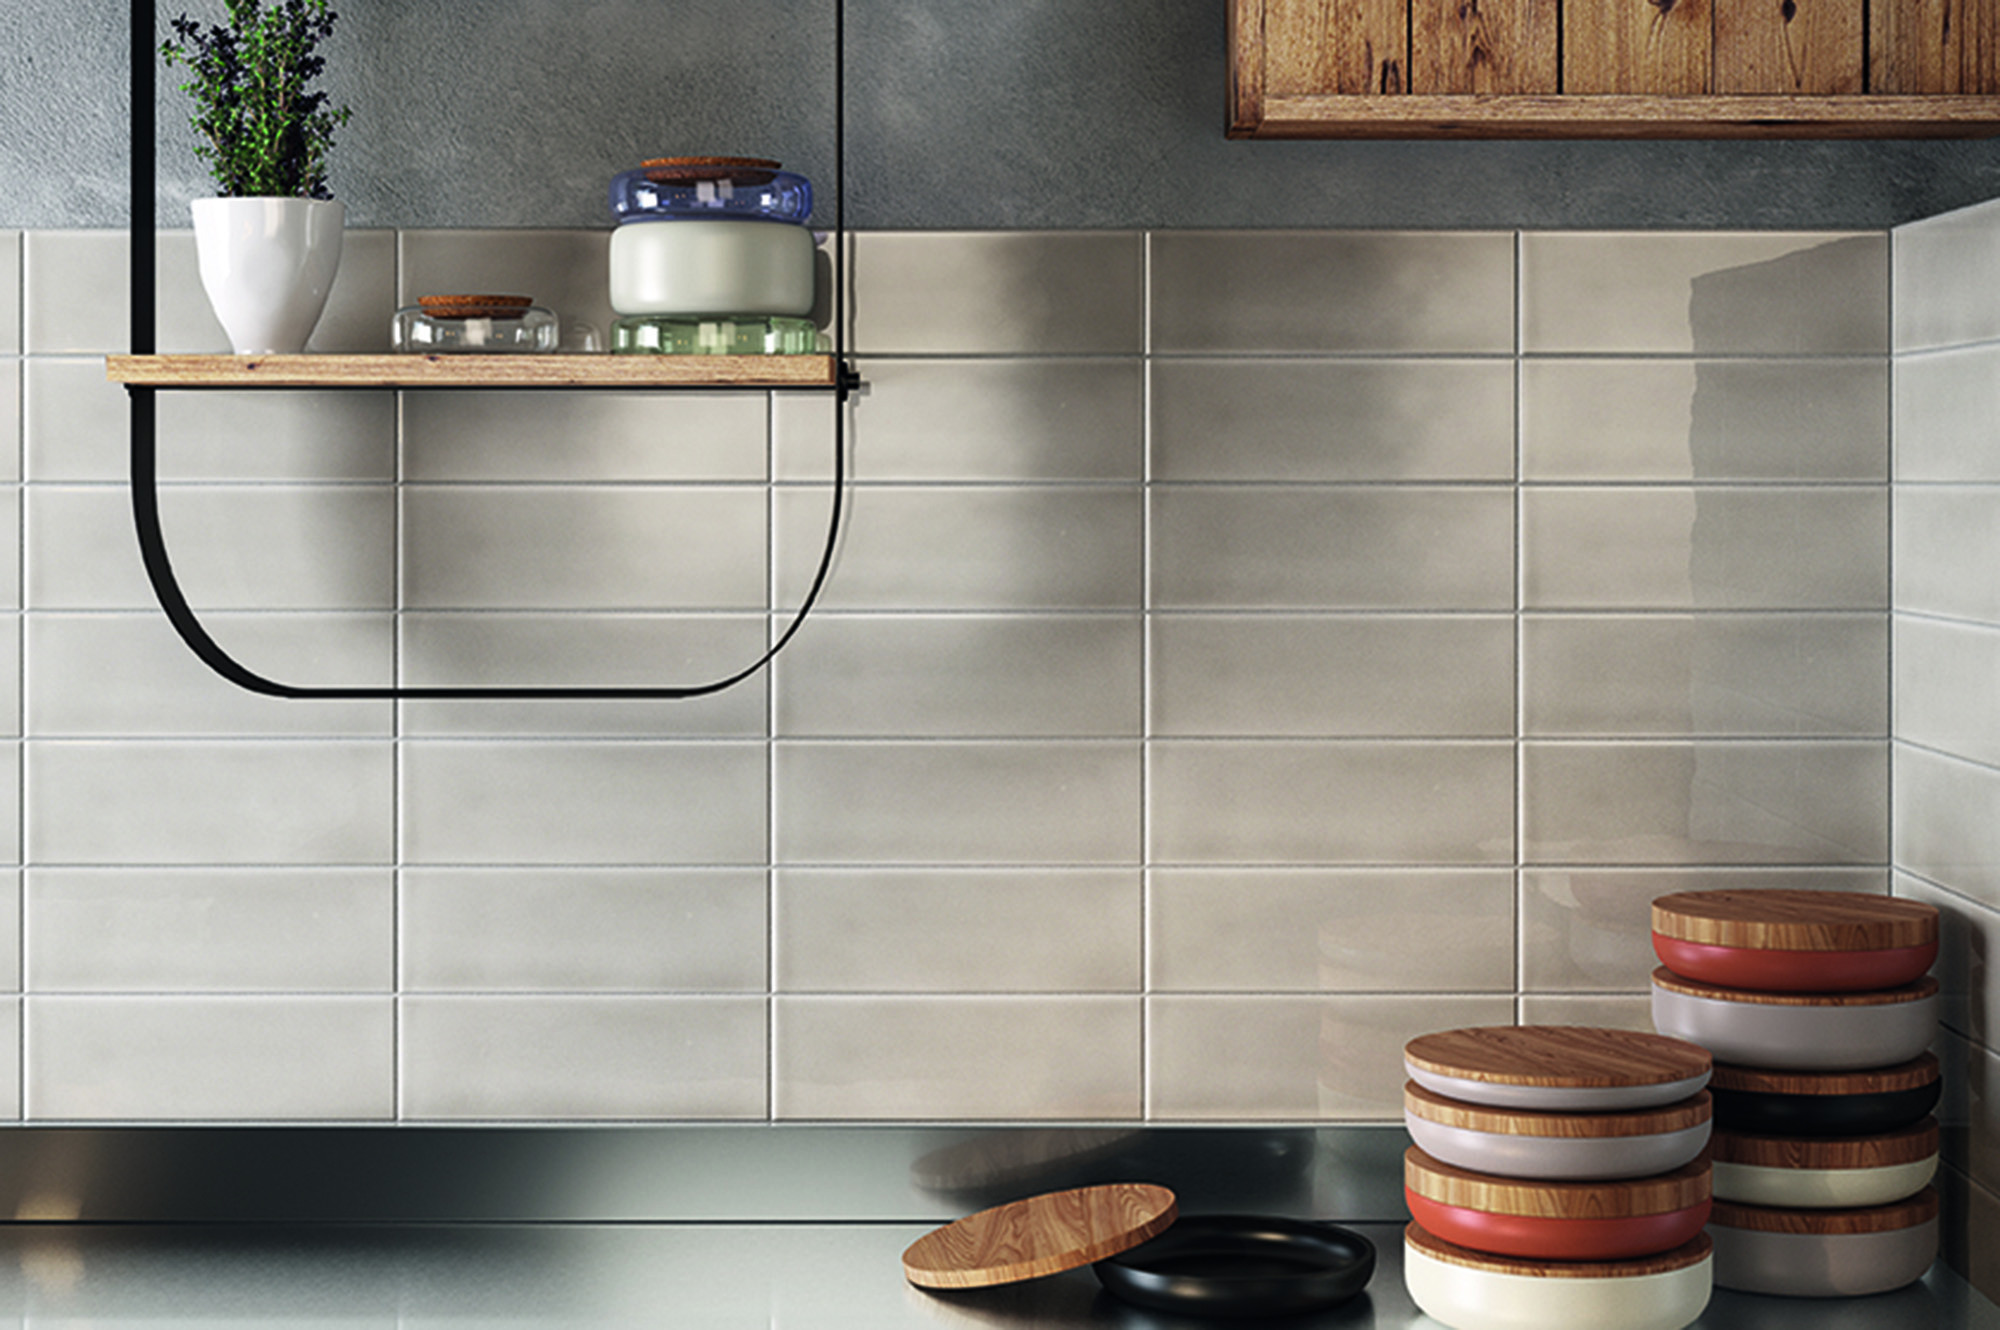 Pictures Of Kitchen Backsplash Tile
 75 Kitchen Backsplash Ideas for 2020 Tile Glass Metal etc